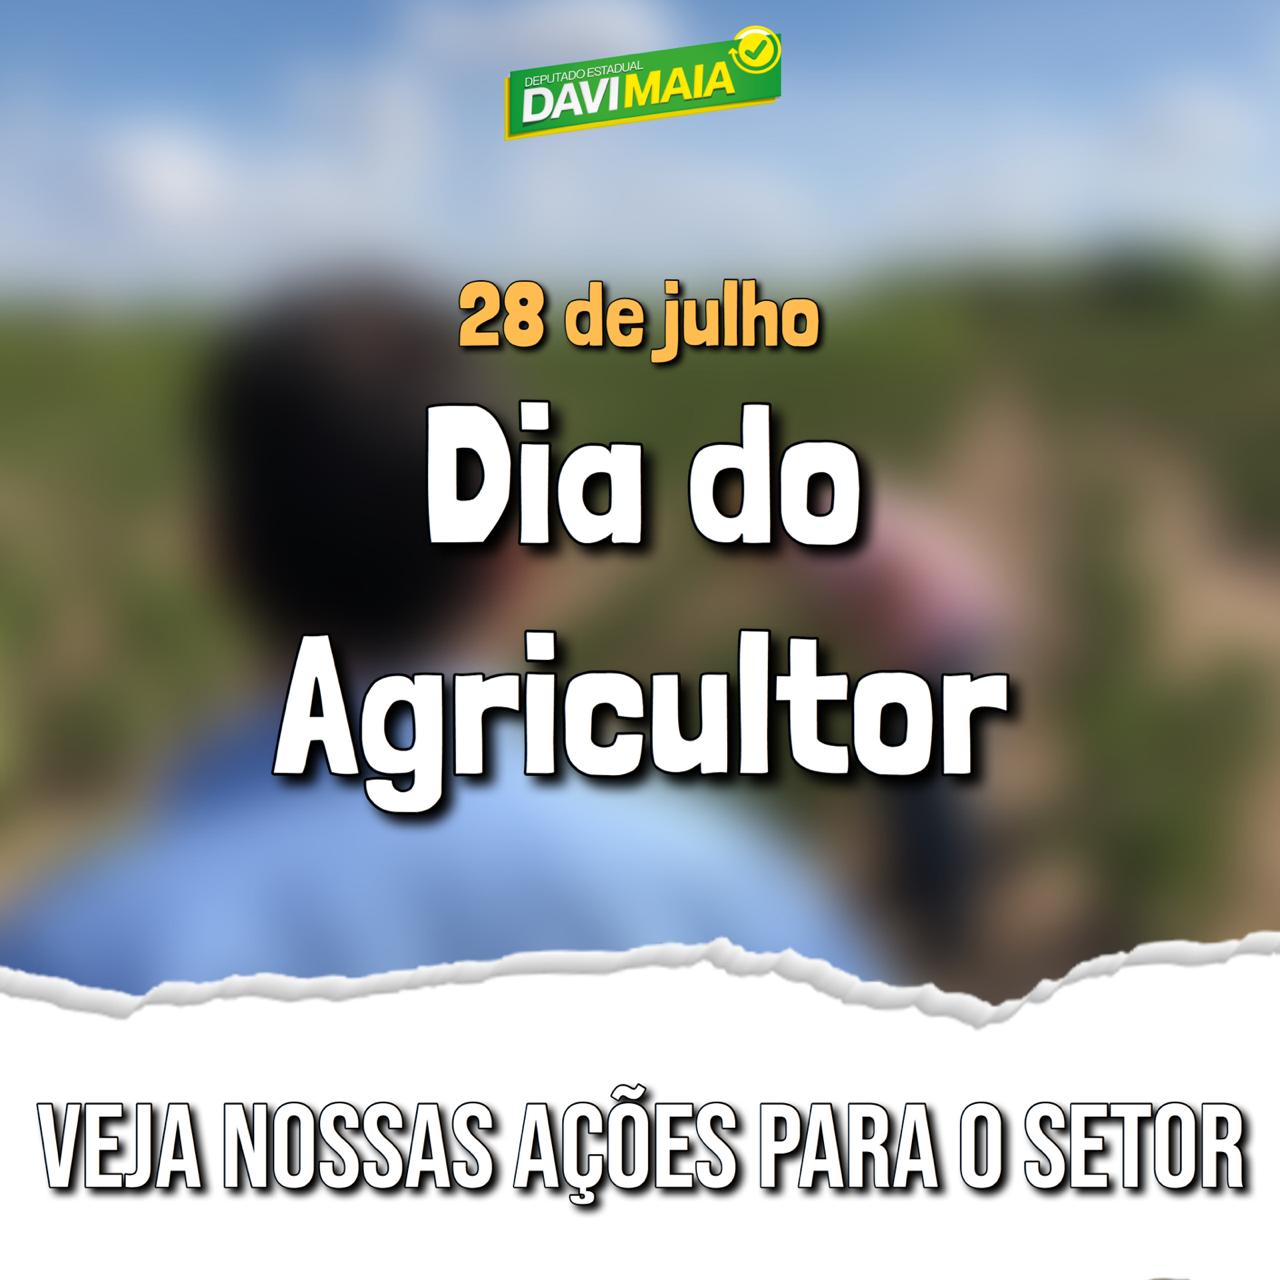 Dia do Agricultor: Davi Maia presta contas de ações voltadas para a agricultura